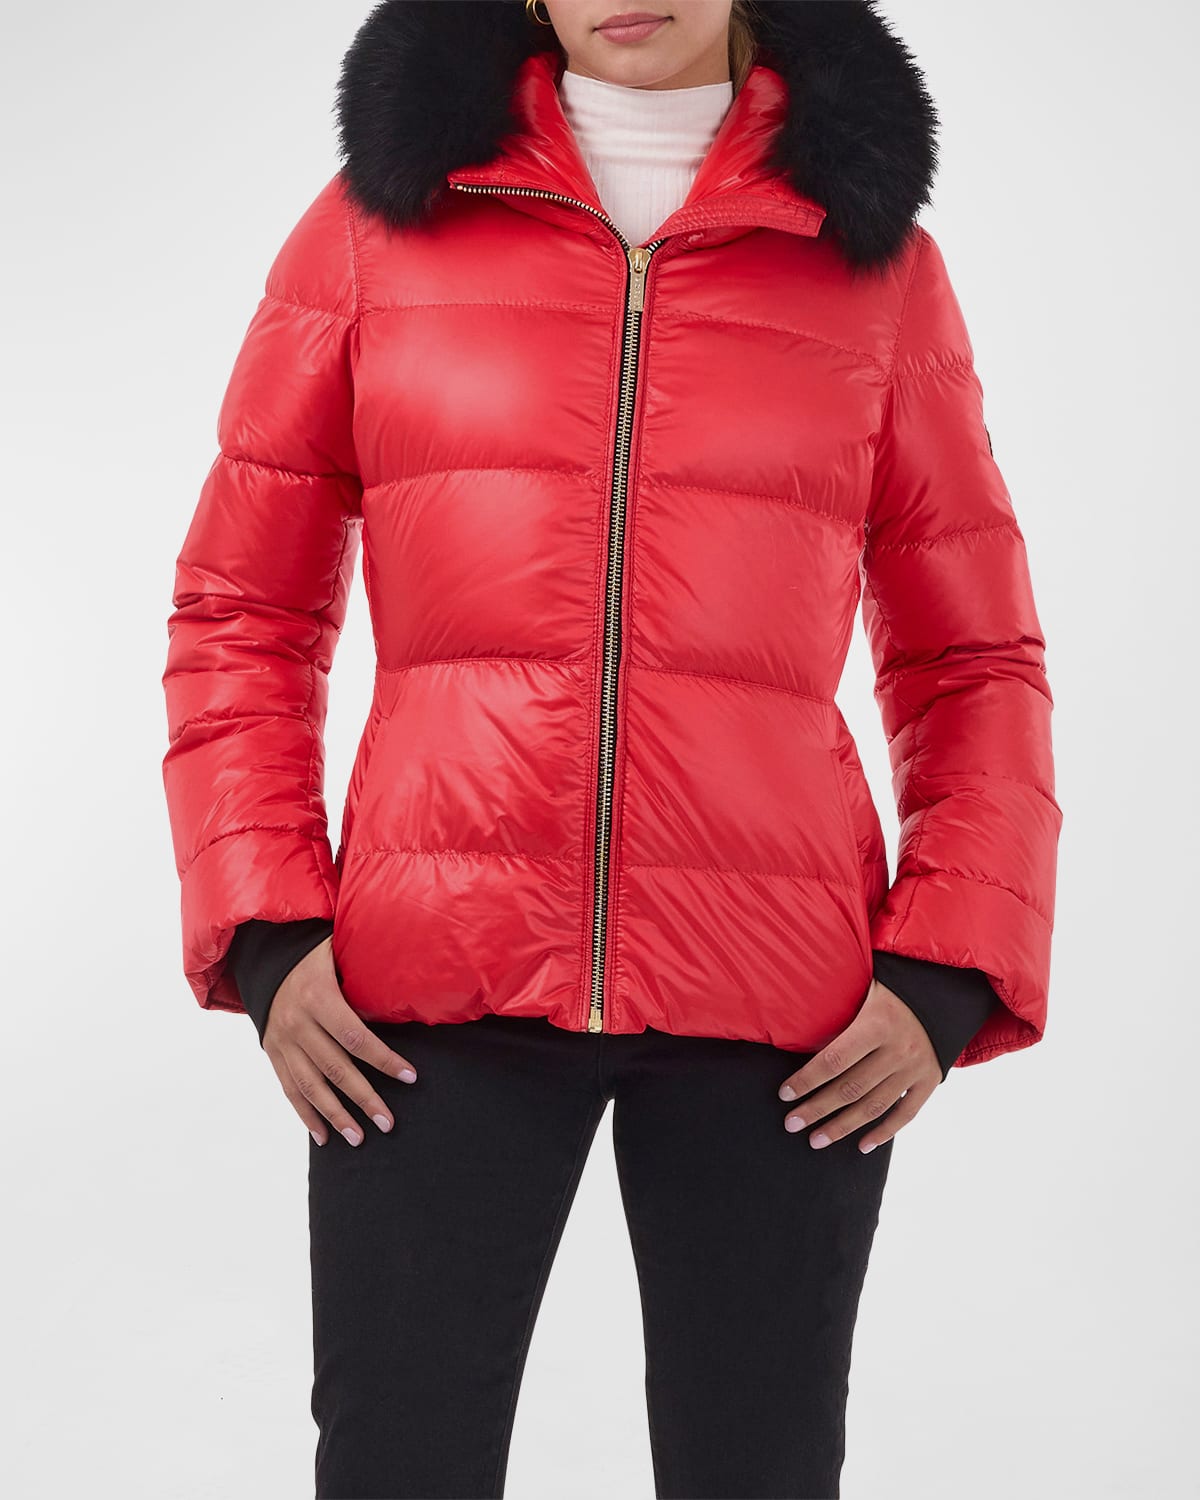 Gorski Apres-ski Jacket W/ Detachable Lamb Shearling Trim In Red/black